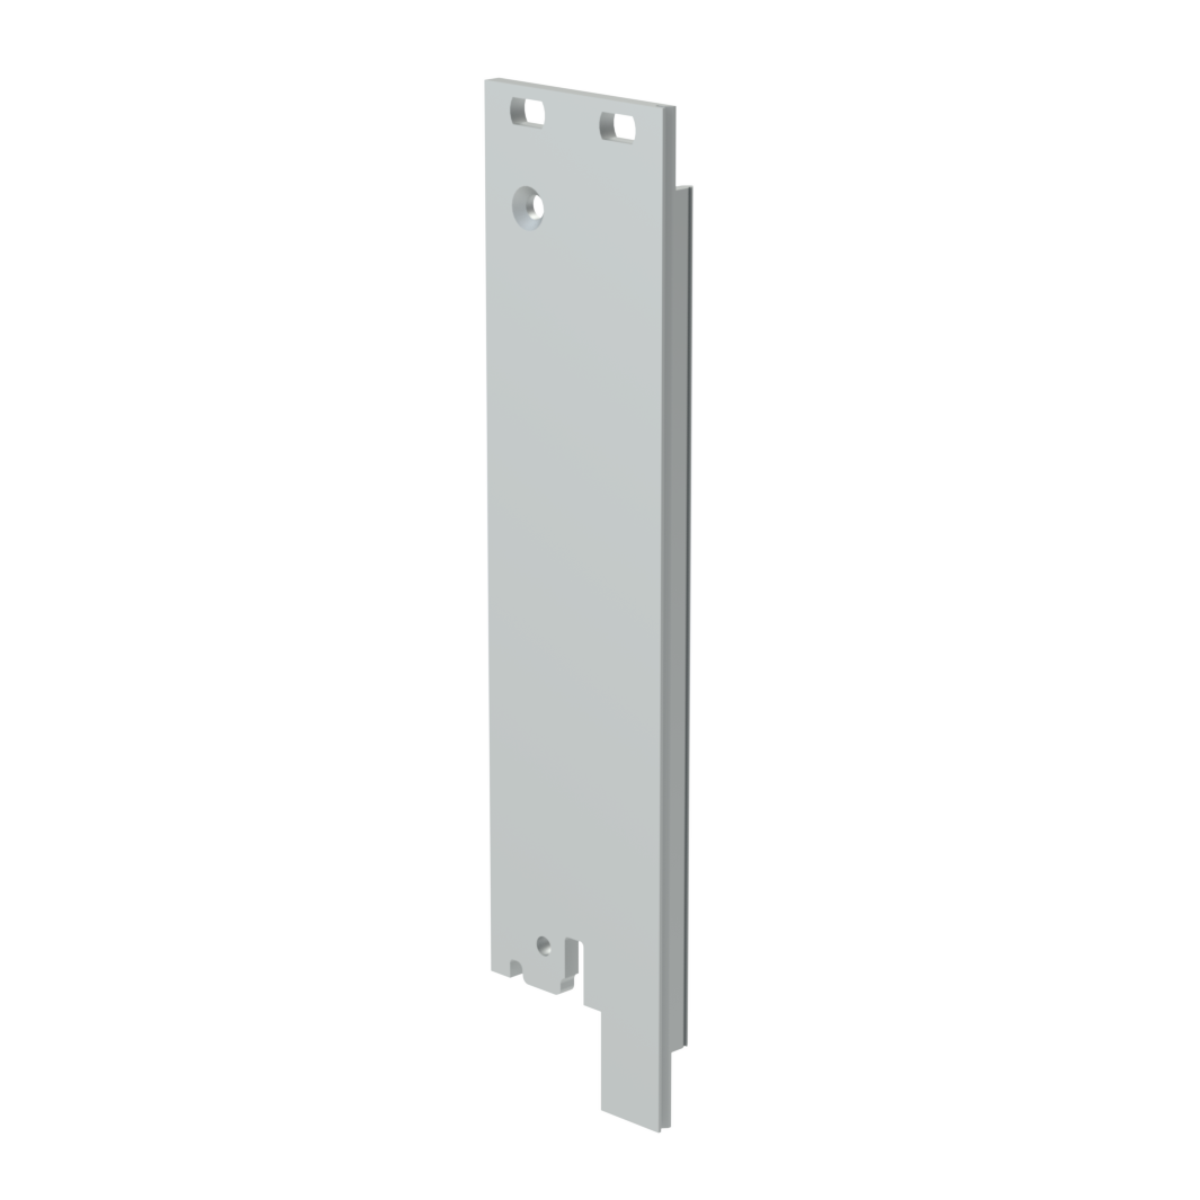 Лицевая панель U-образная 3U5HP под инжектор-экстрактор тип V-2/V-W низ